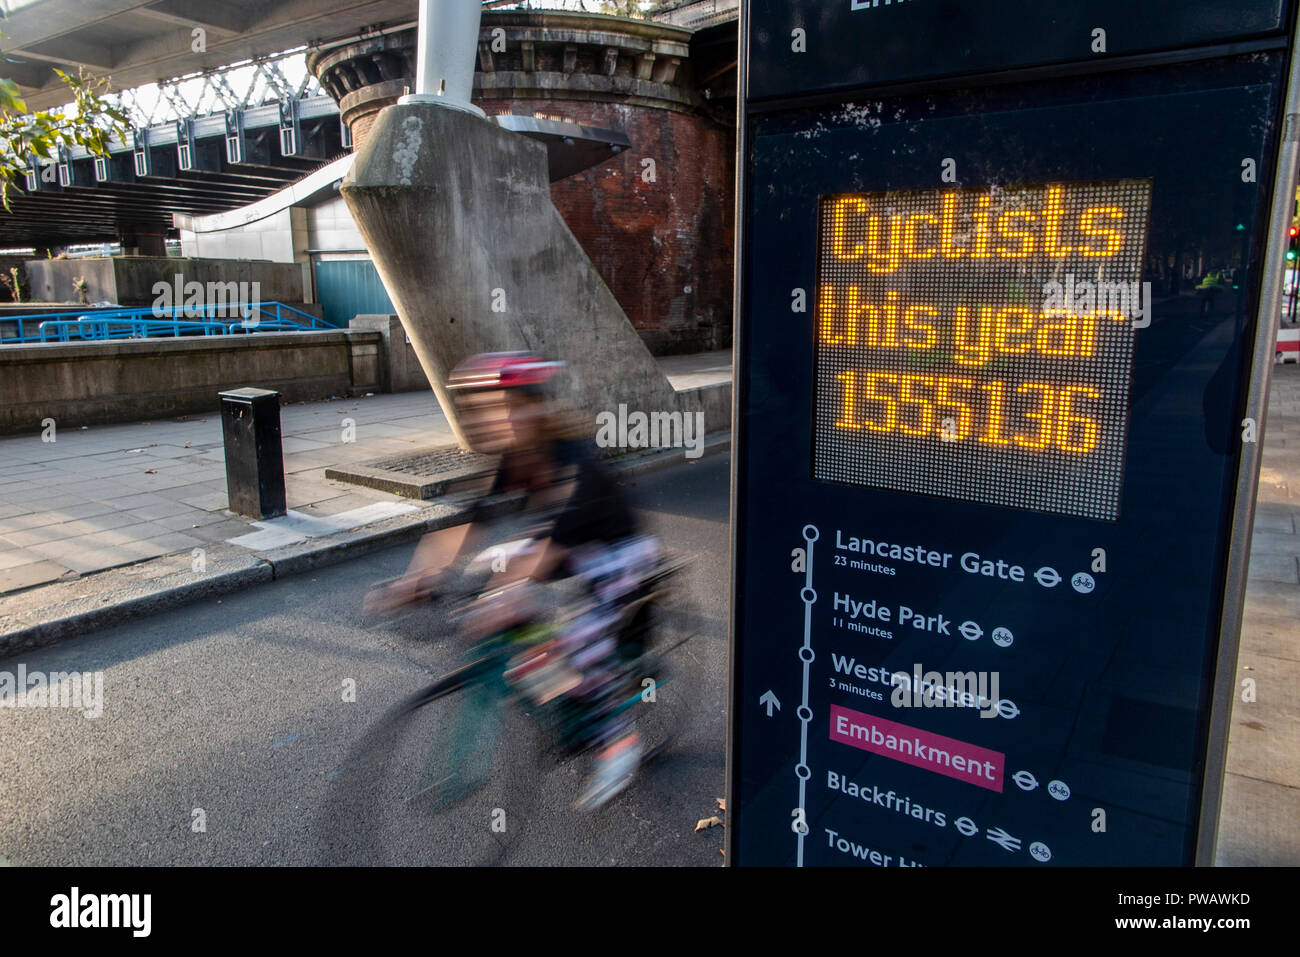 Reiter Radfahren durch eine digitale Fahrrad Reiter Zähler in London  Stockfotografie - Alamy